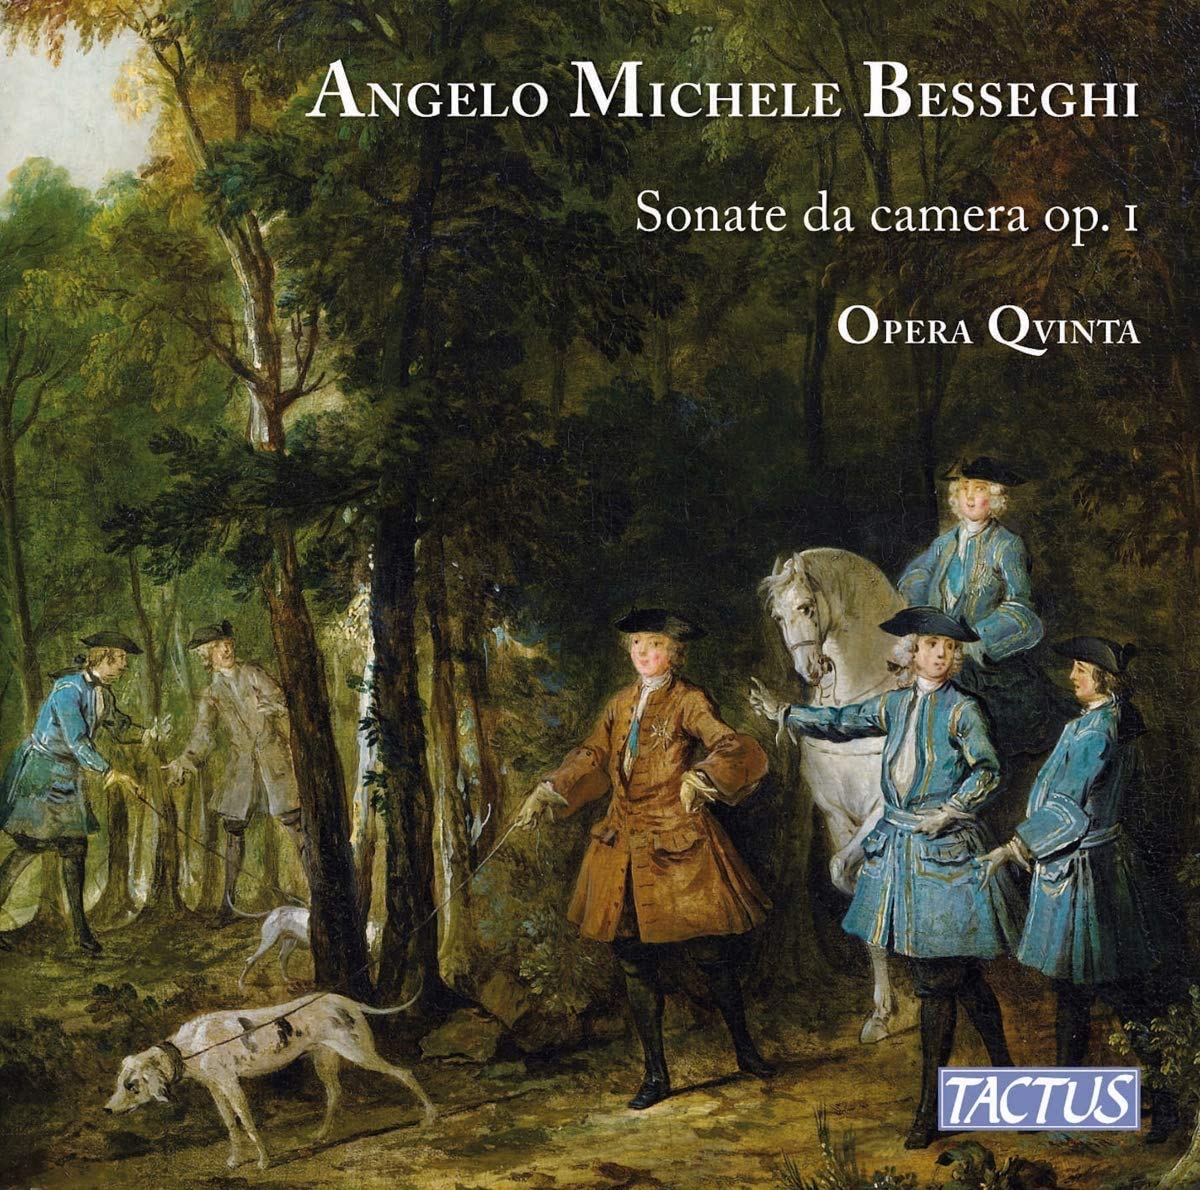 Audio Cd Angelo Michele Besseghi - Sonate Da Camera Op.1 (2 Cd) NUOVO SIGILLATO, EDIZIONE DEL 21/07/2020 SUBITO DISPONIBILE